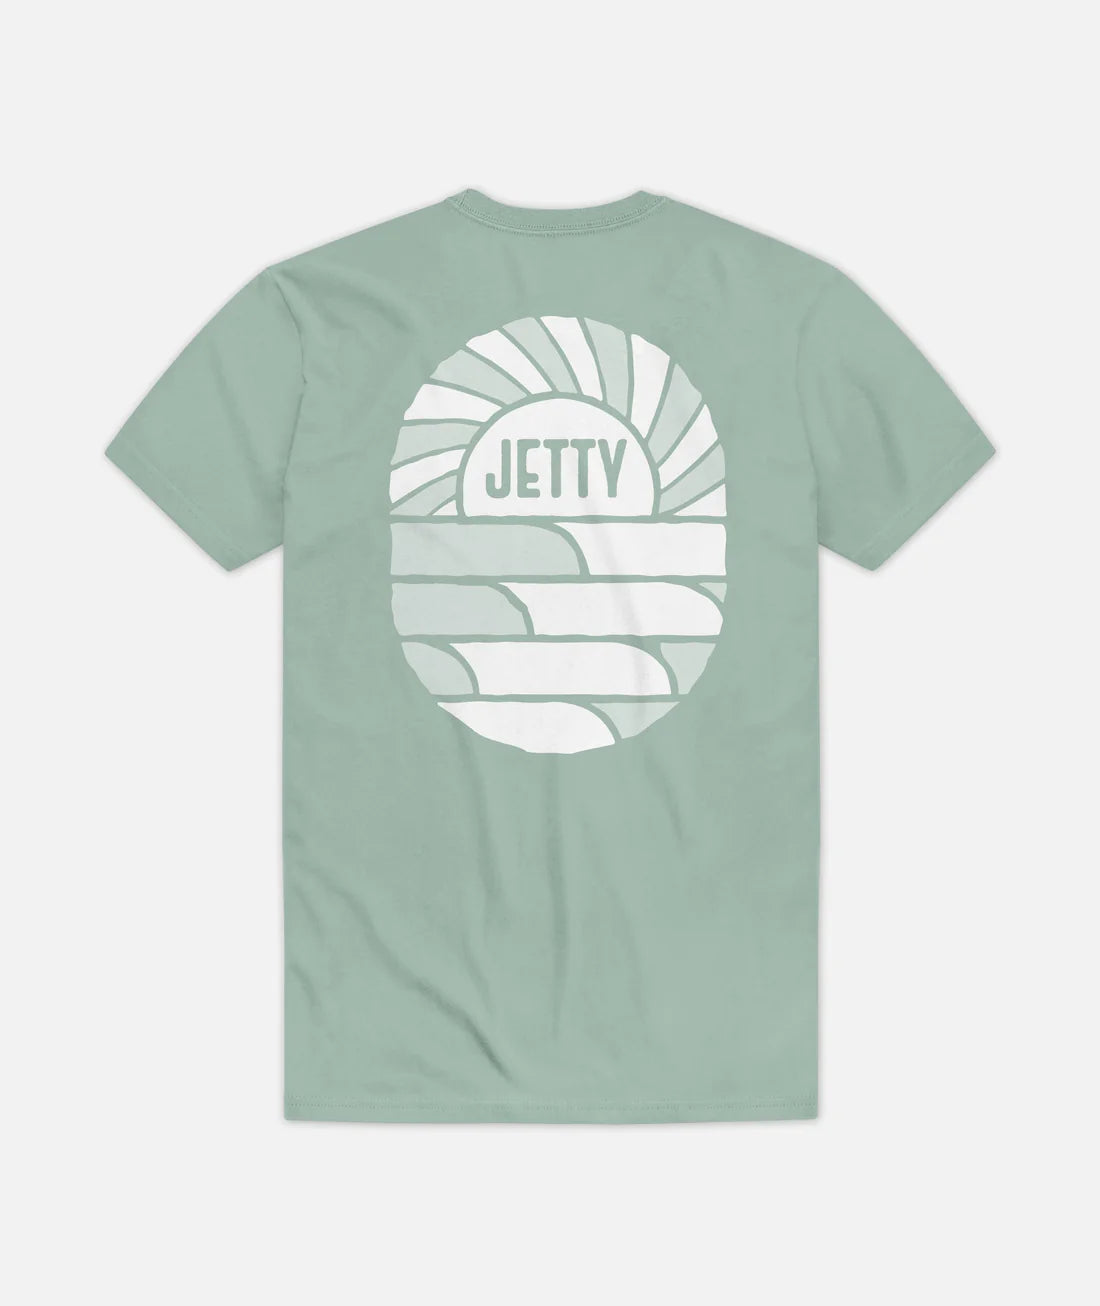 Jetty - Point Break Tee